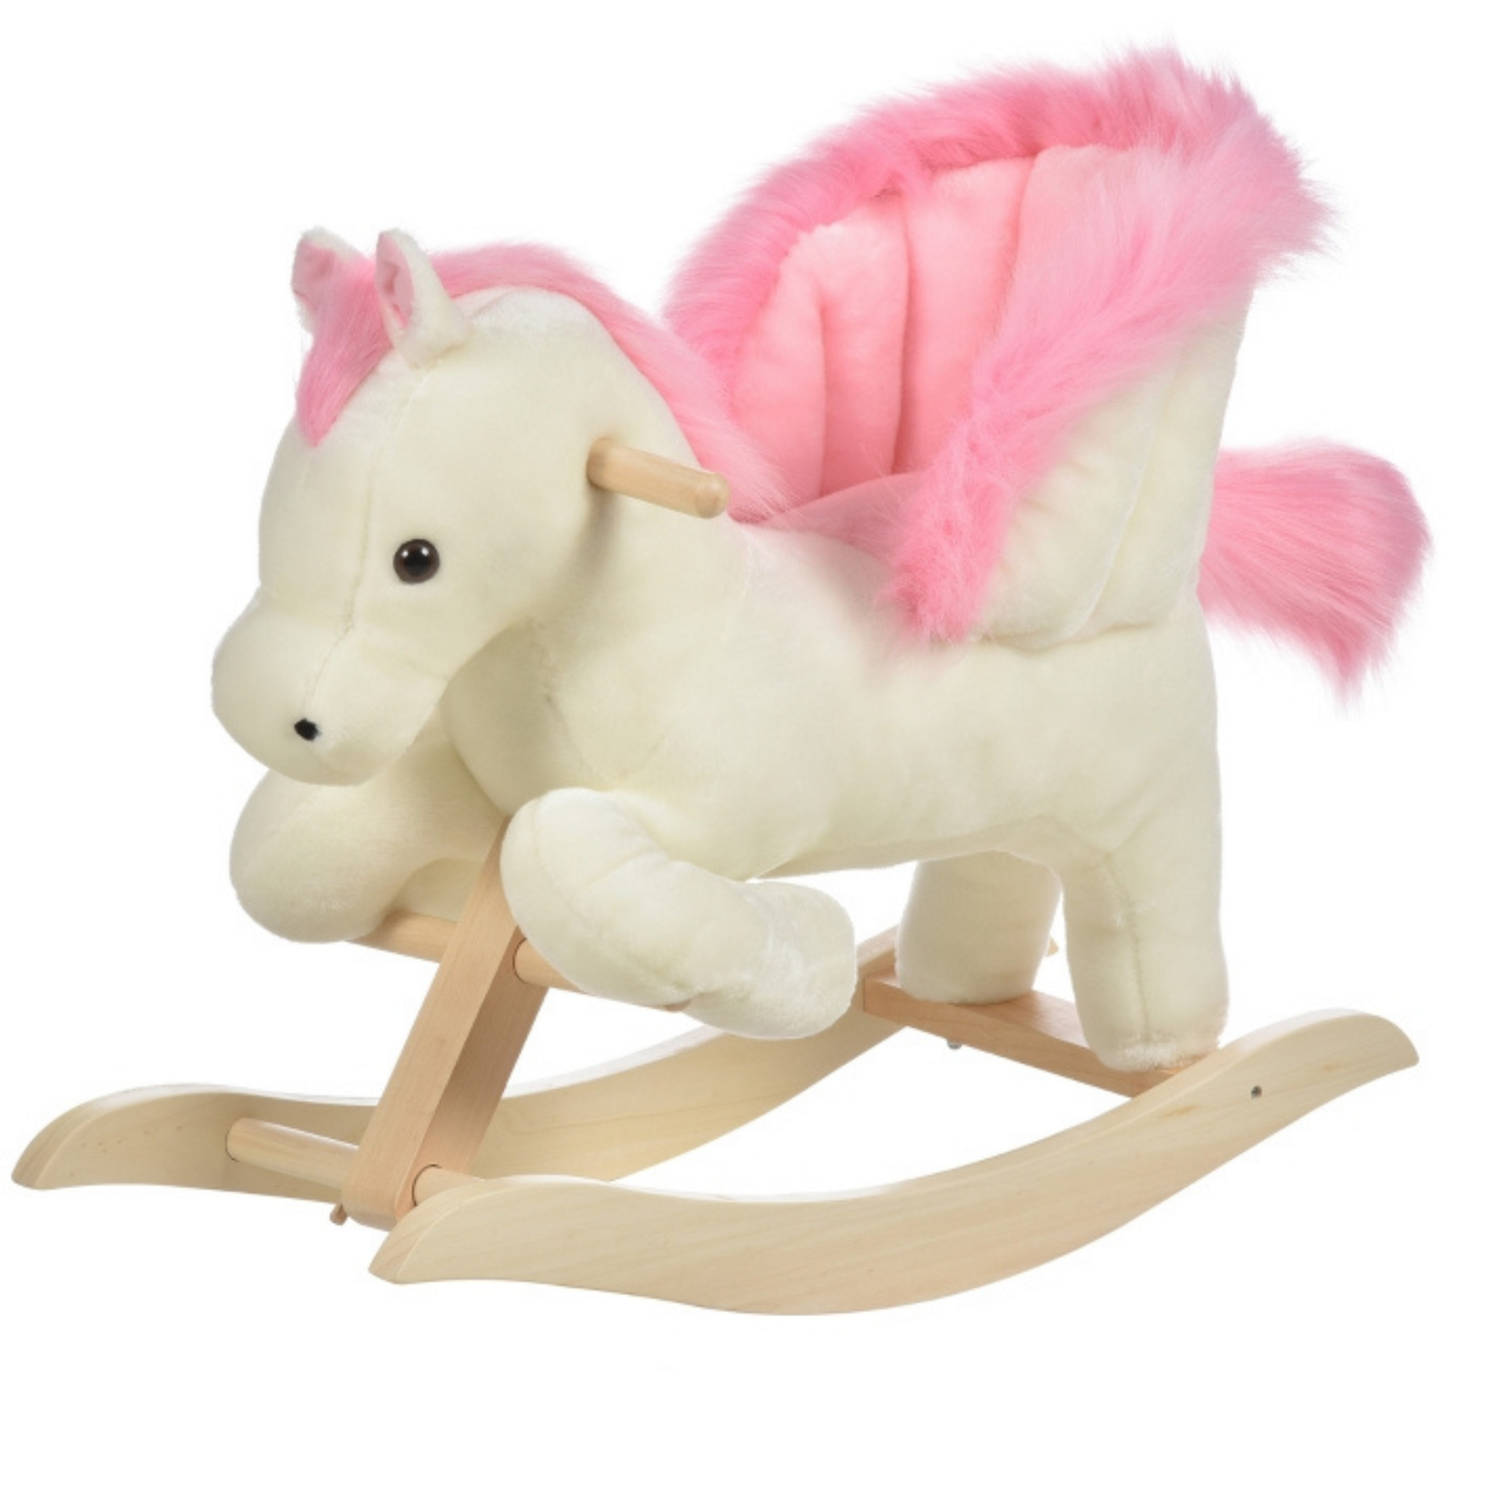 Hobbeldier Hobbelpaard Schommelpaard Schommelstoel voor Kinderen Speelgoed wit-roze 70 x 28 x 57 cm